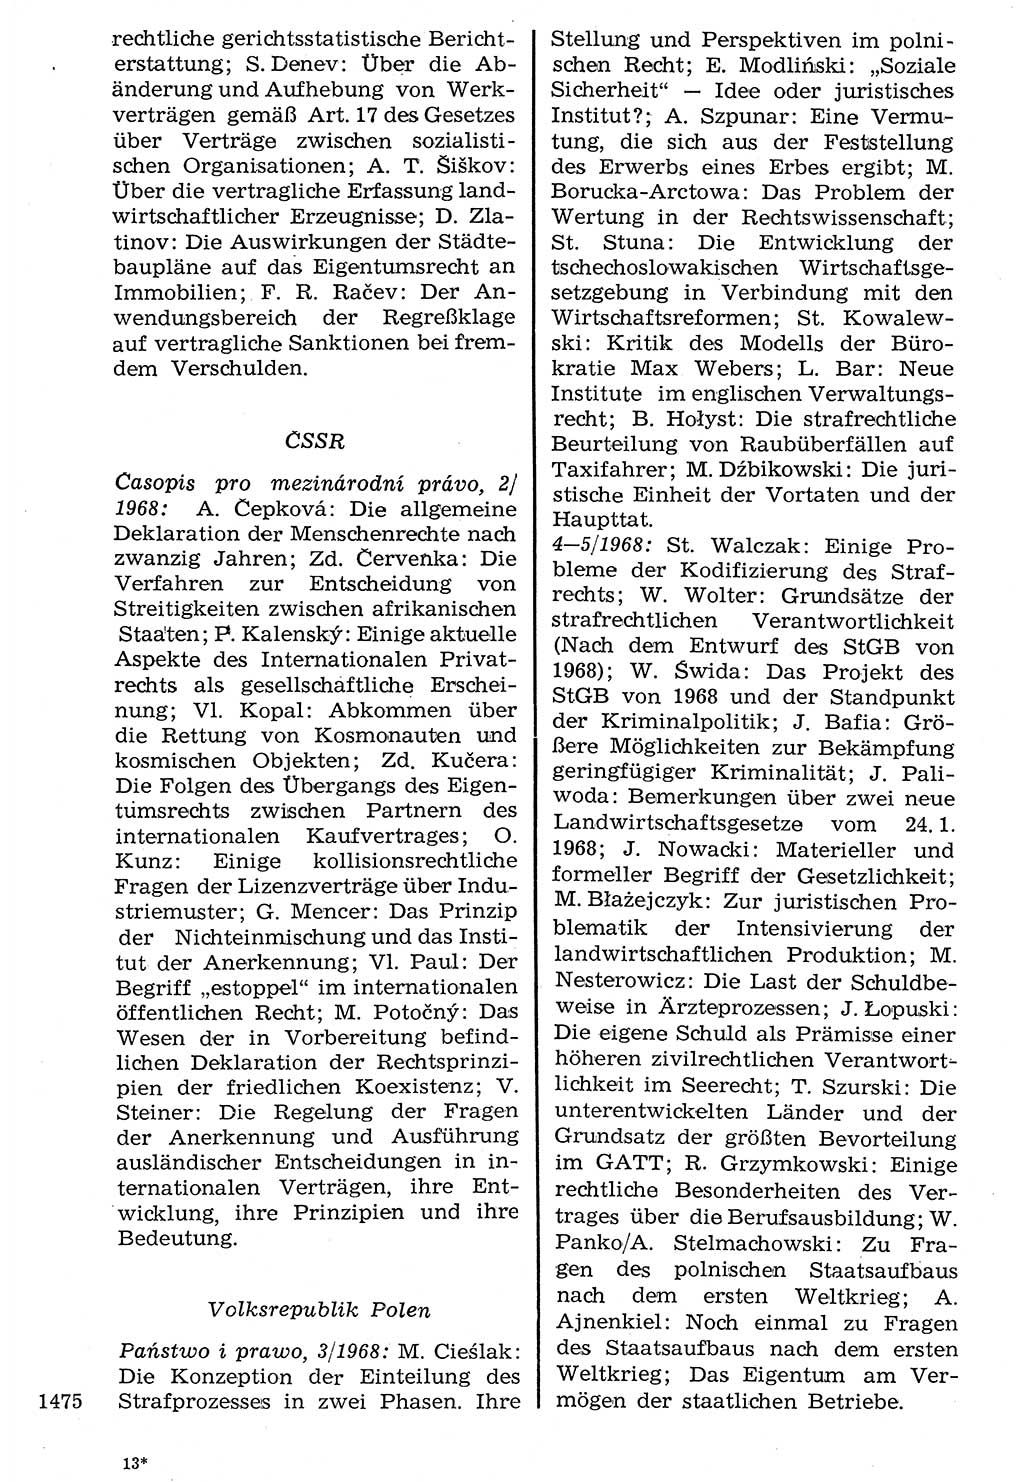 Staat und Recht (StuR), 17. Jahrgang [Deutsche Demokratische Republik (DDR)] 1968, Seite 1475 (StuR DDR 1968, S. 1475)